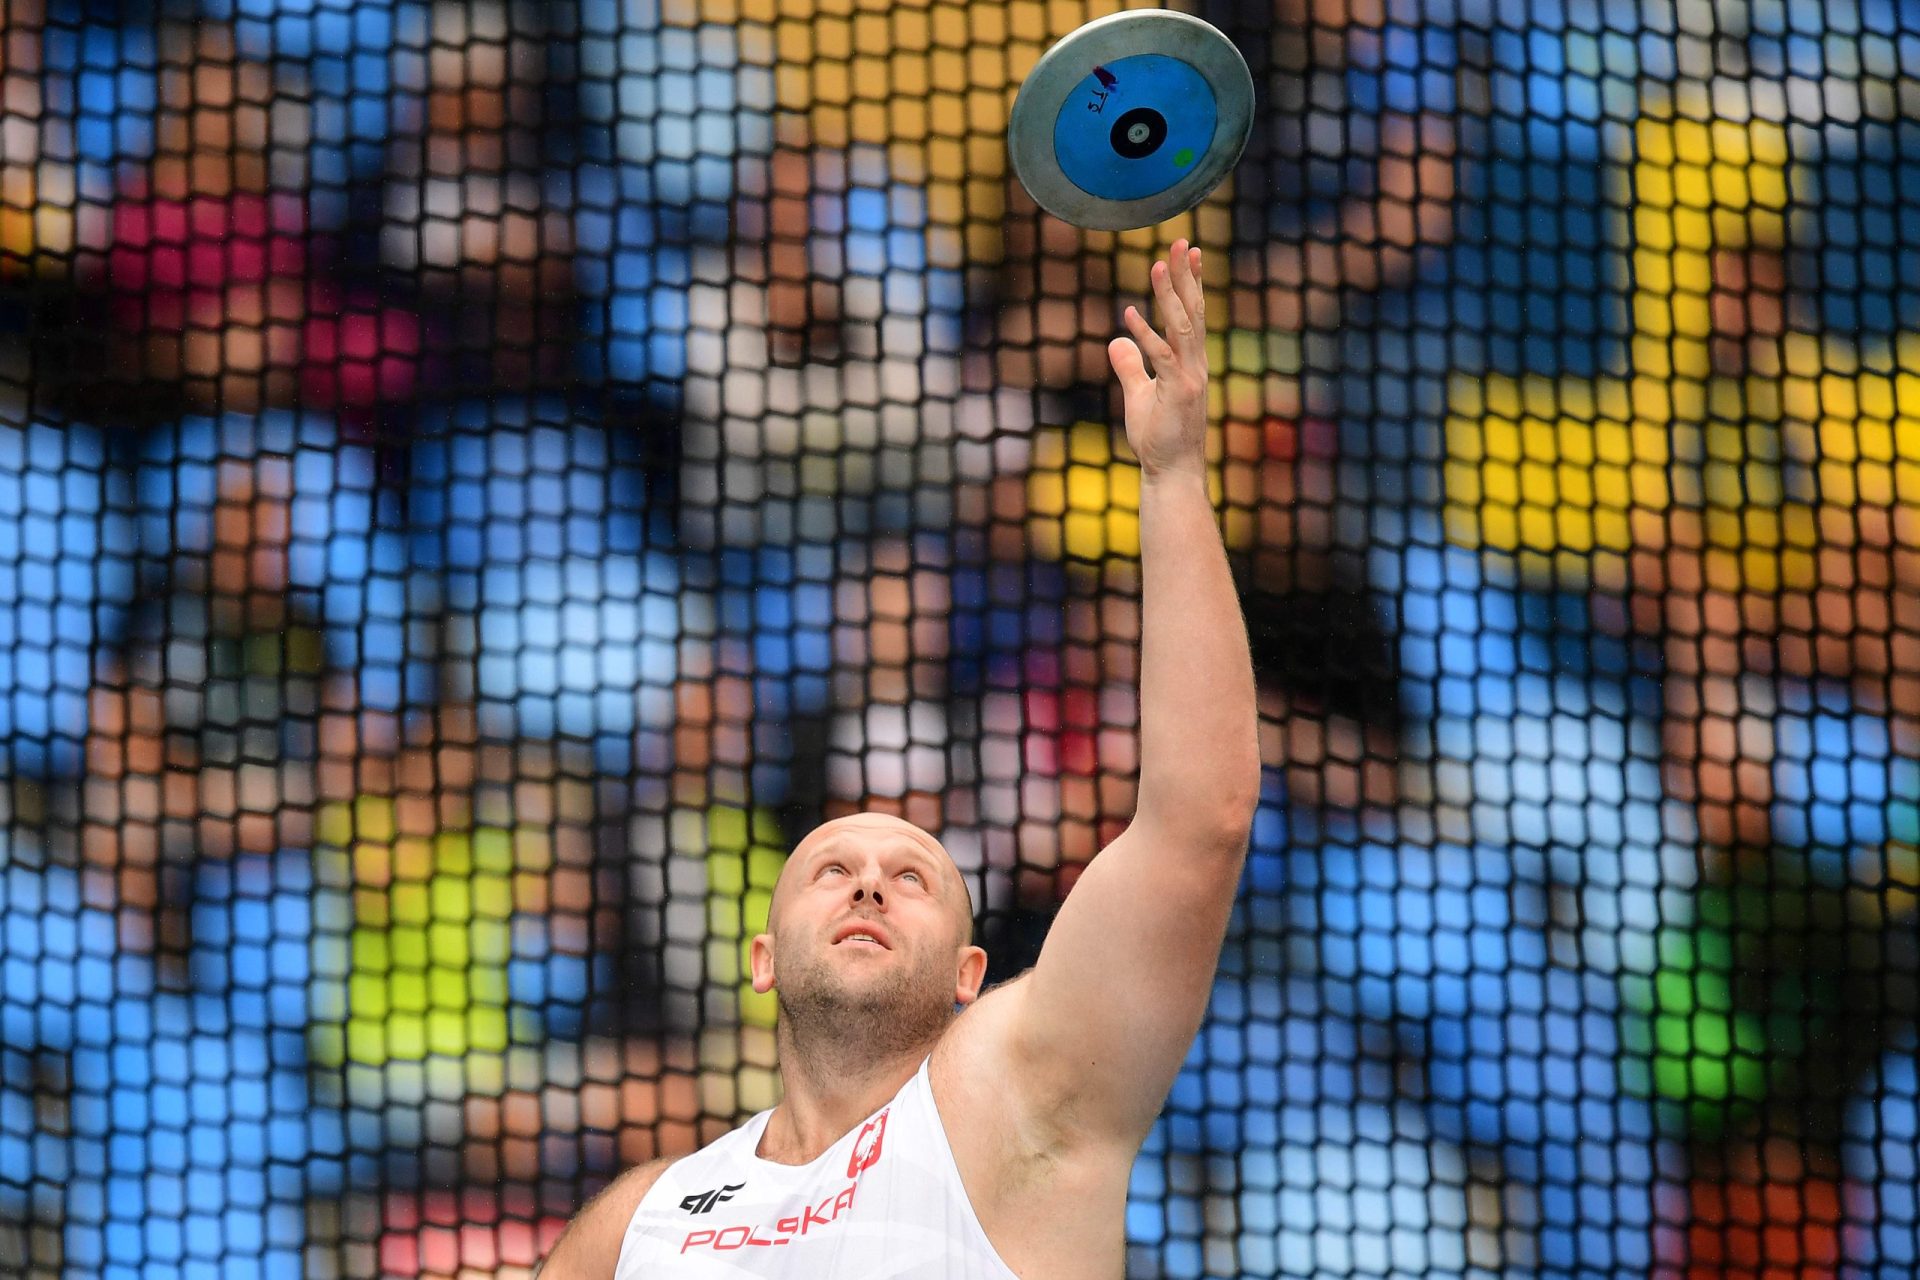 Rio2016. Atleta polaco vende medalha para ajudar menino com cancro